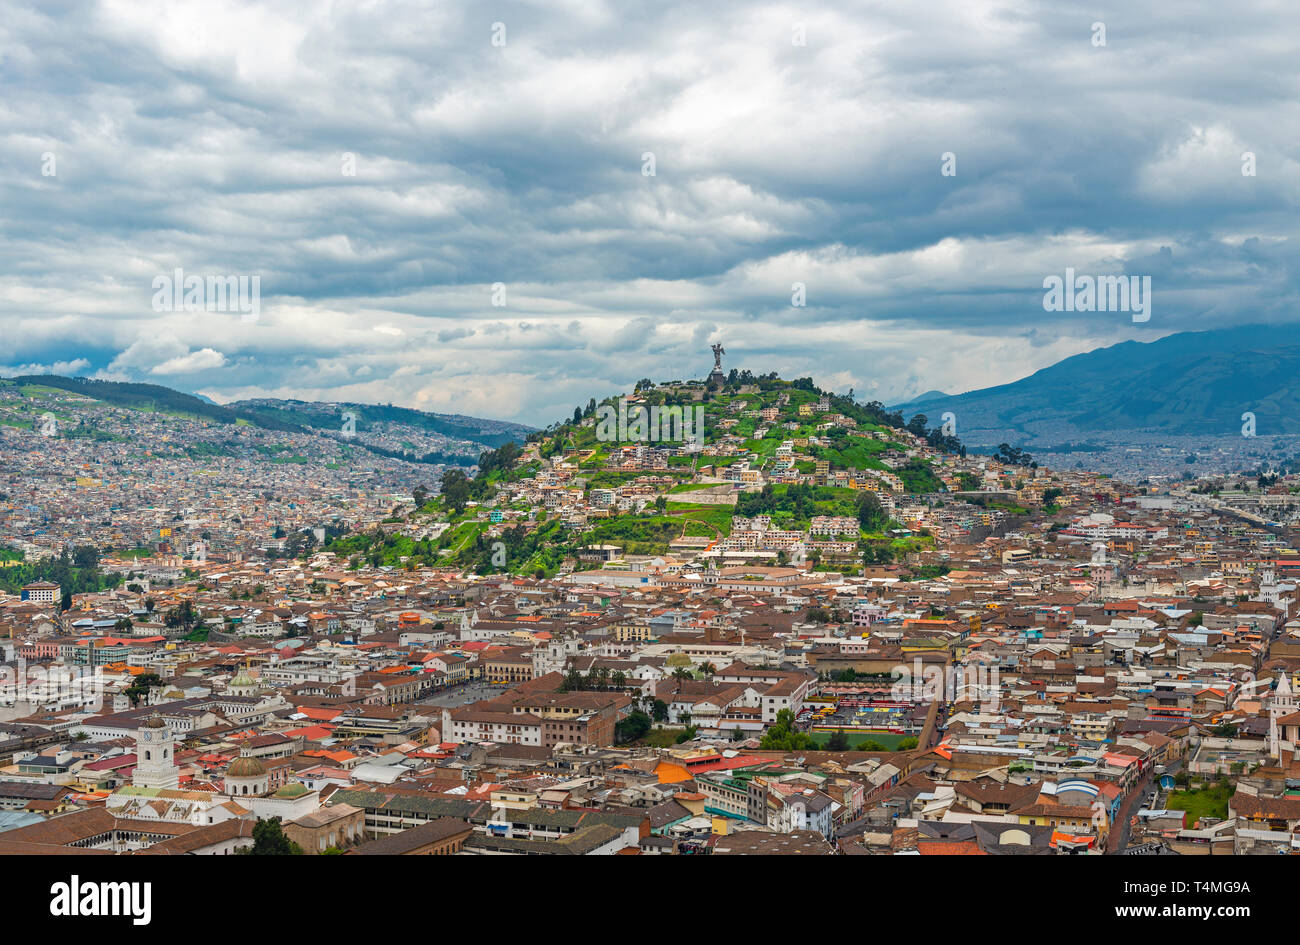 Il centro storico della città di Quito per la Cordigliera delle Ande con la Panecillo Hill e vergine di Quito e un drammatico cielo nuvoloso, Ecuador. Foto Stock